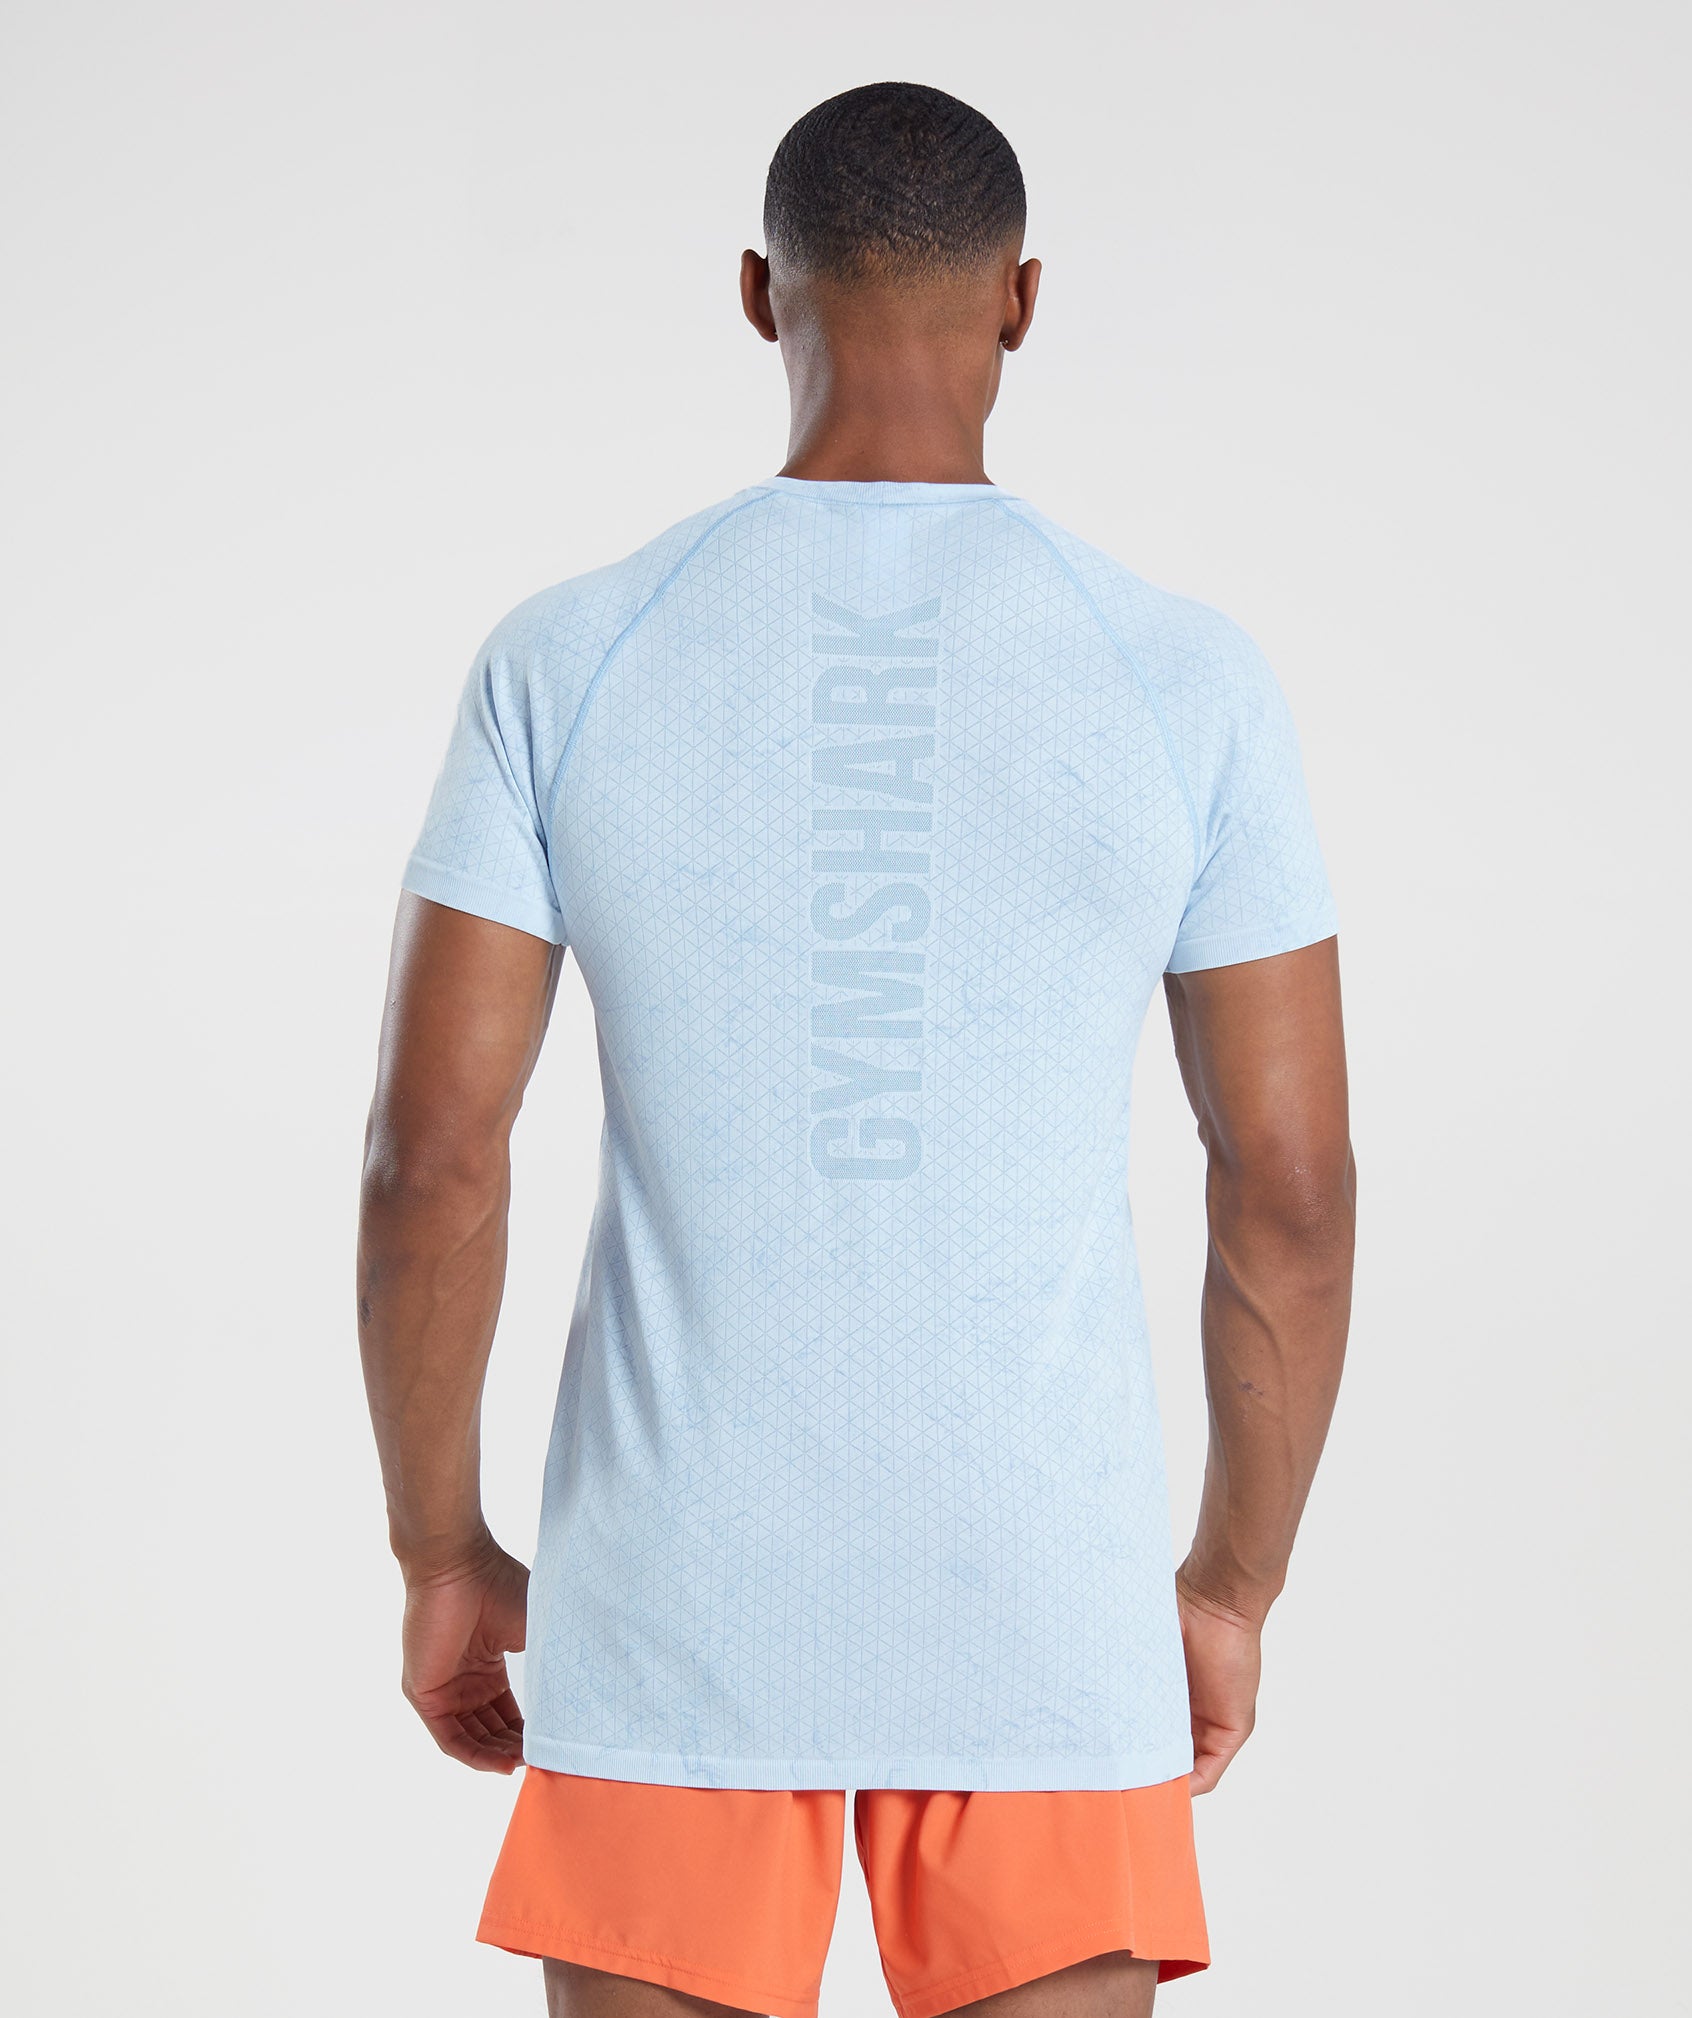 Gymshark Geo Seamless Long Sleeve T-Shirt - White/Moonstone Blue